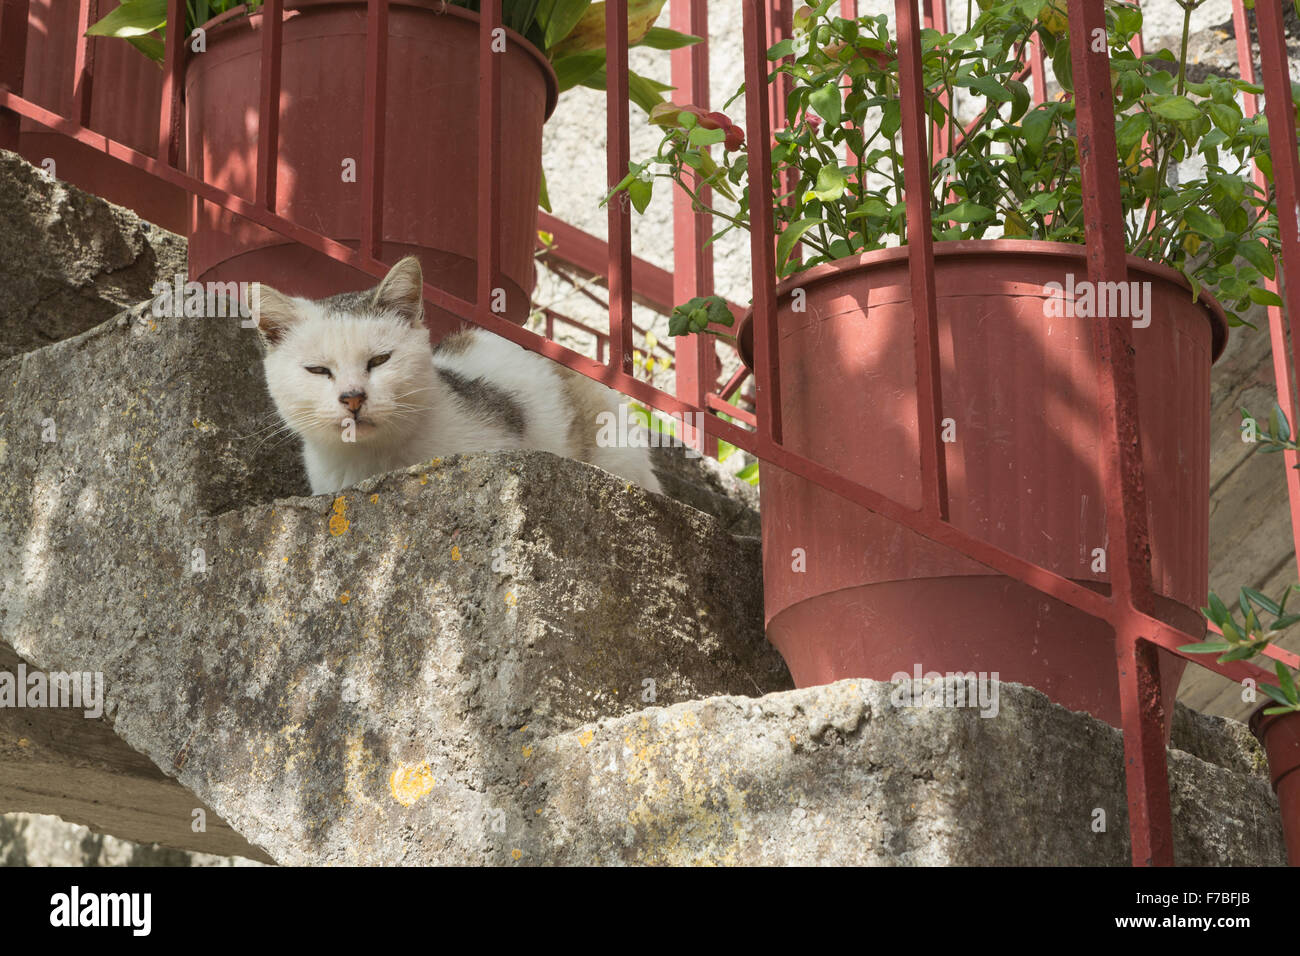 Un chat grec est assise sur des mesures en dehors d'une chambre à Corfou, Grèce. Banque D'Images